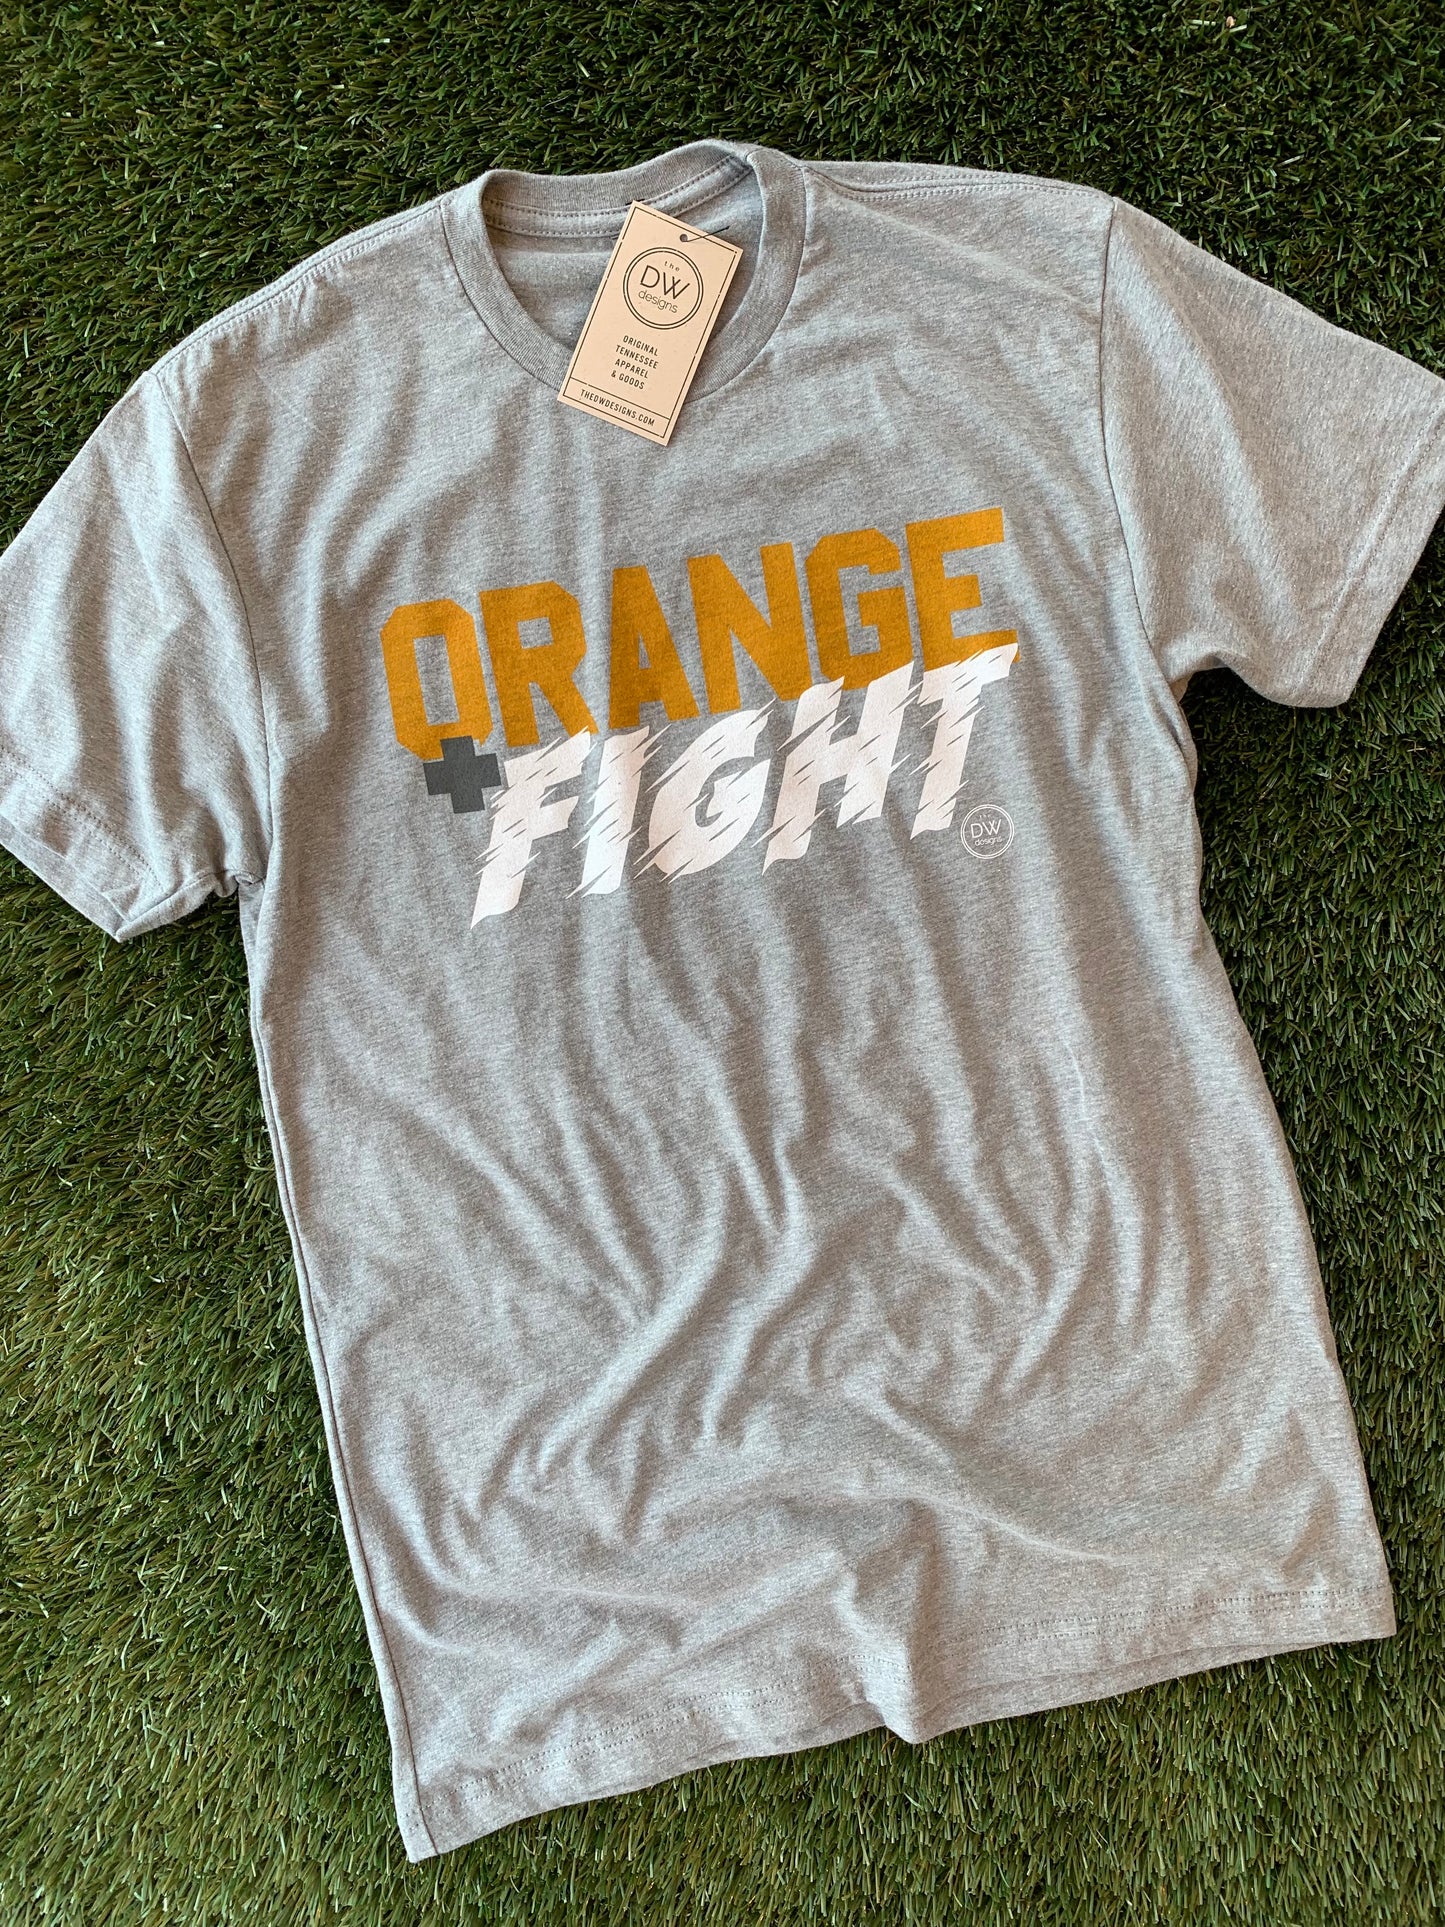 The Orange + Fight Tee